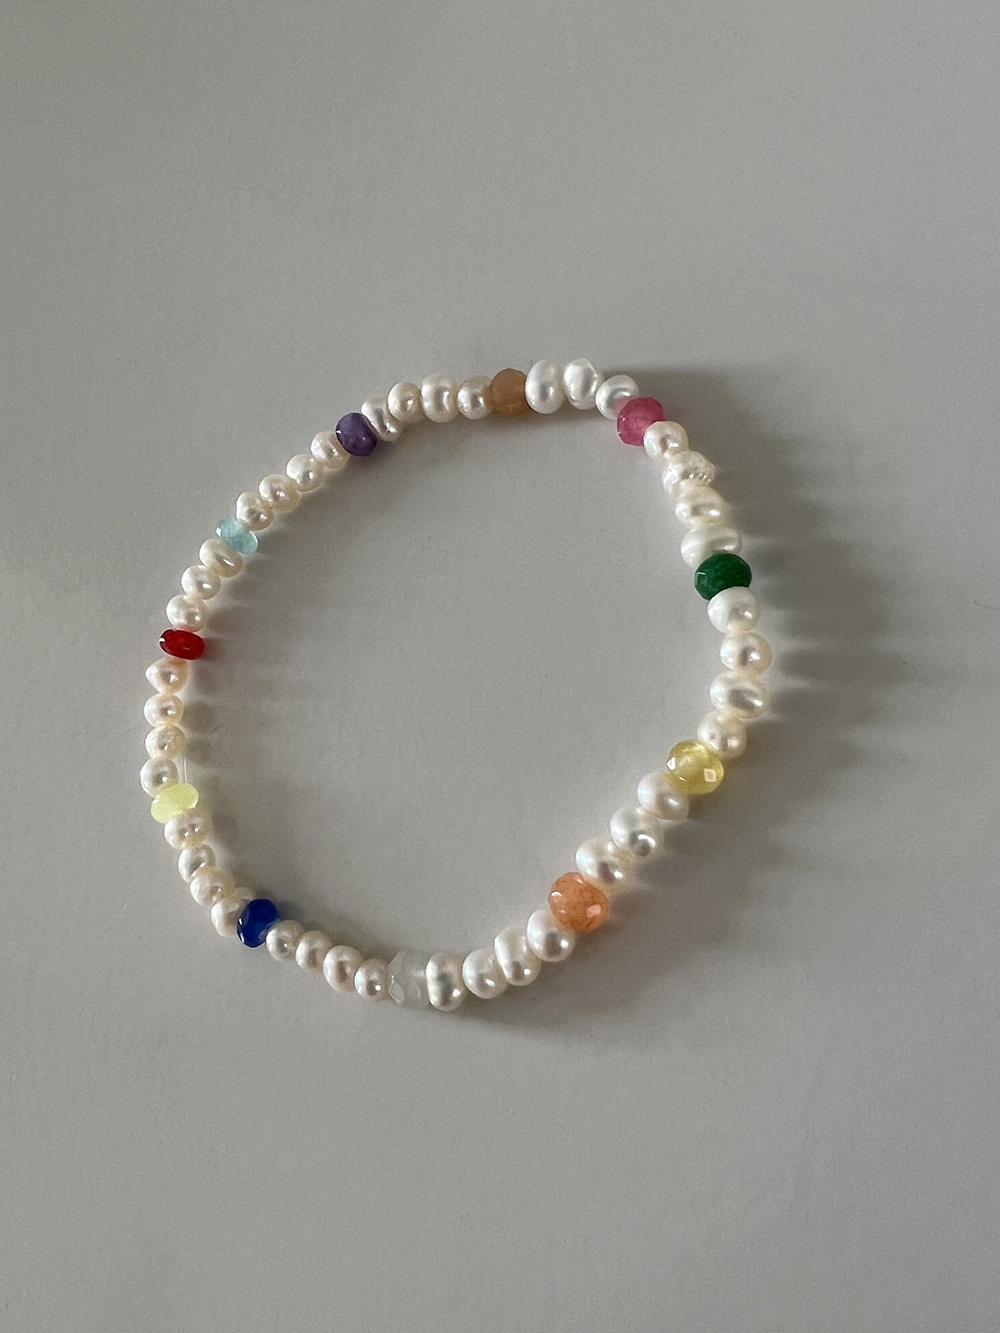 Rainbow pearl bracelet